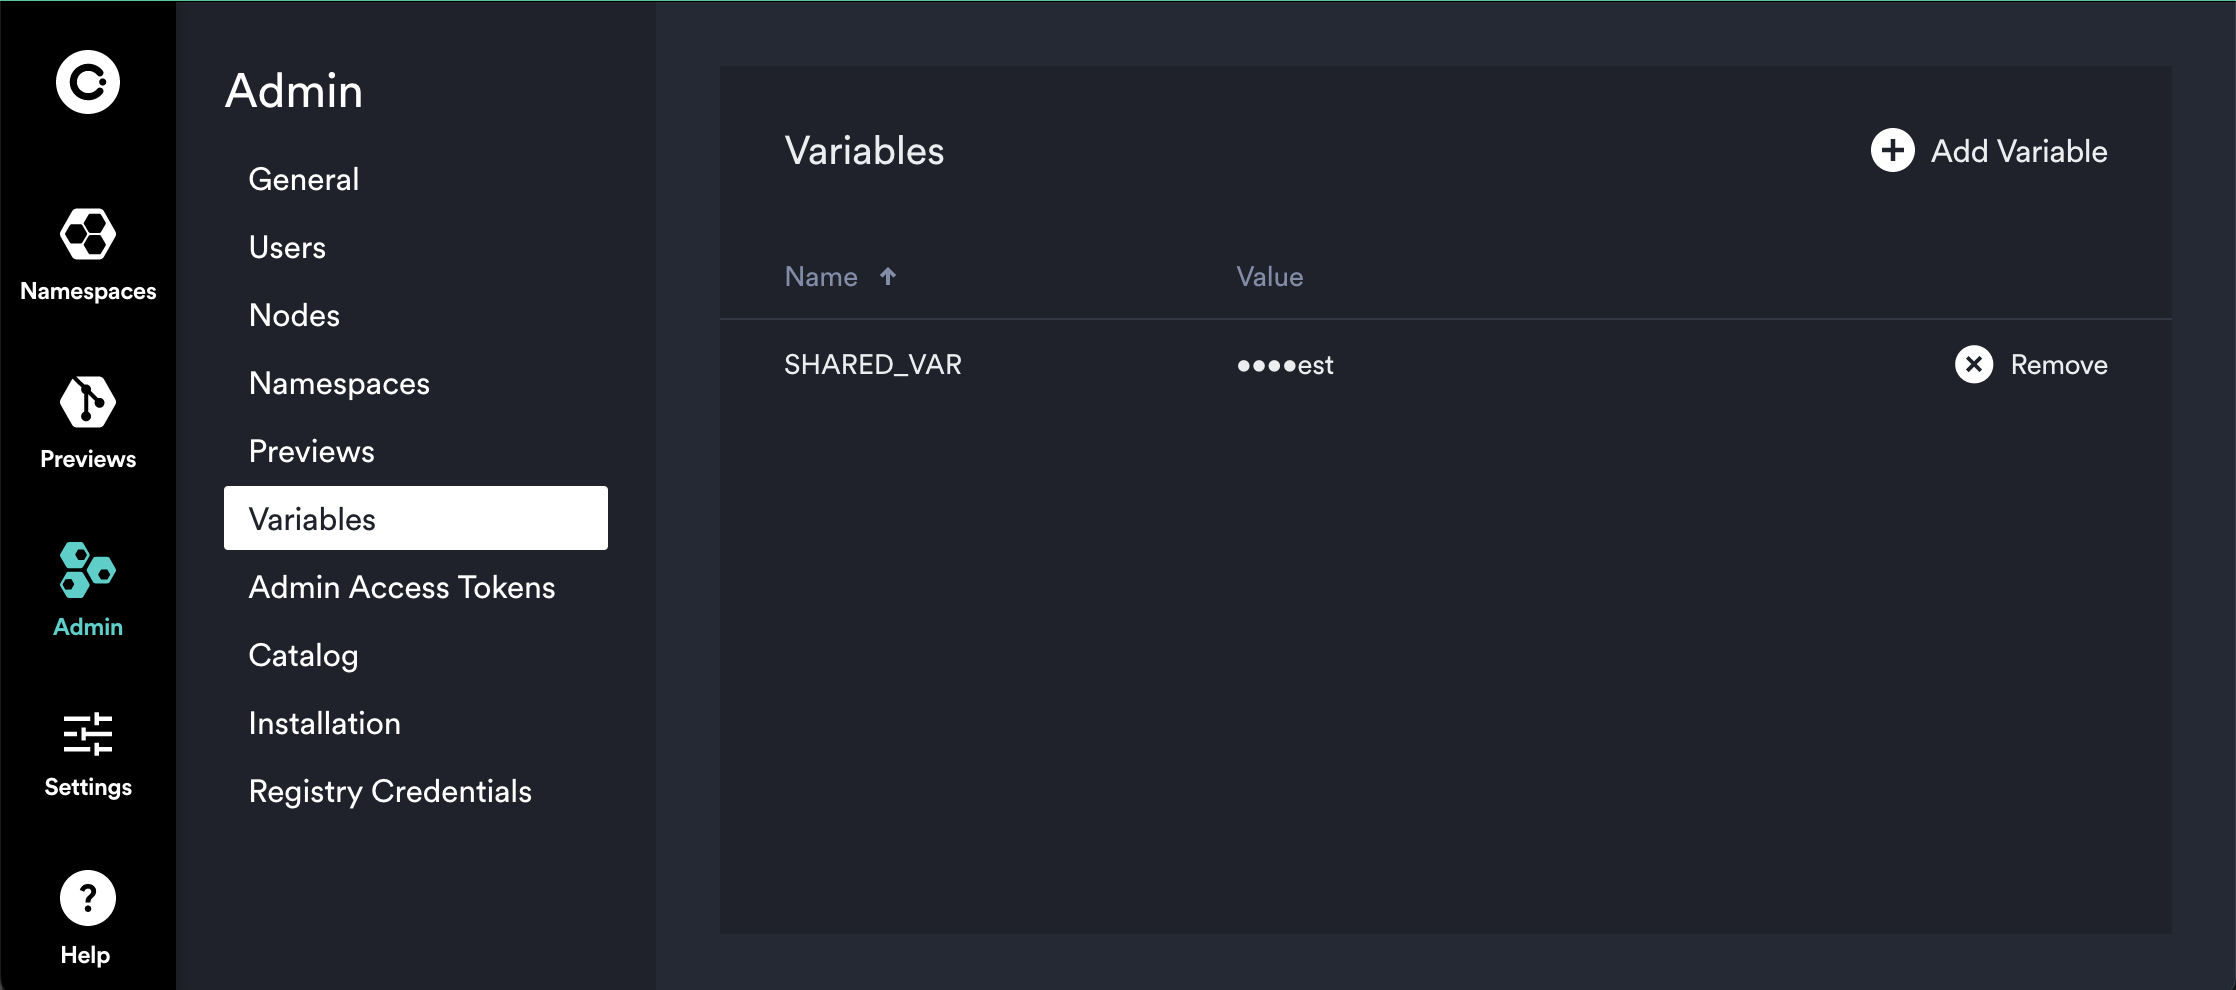 Variables in settings